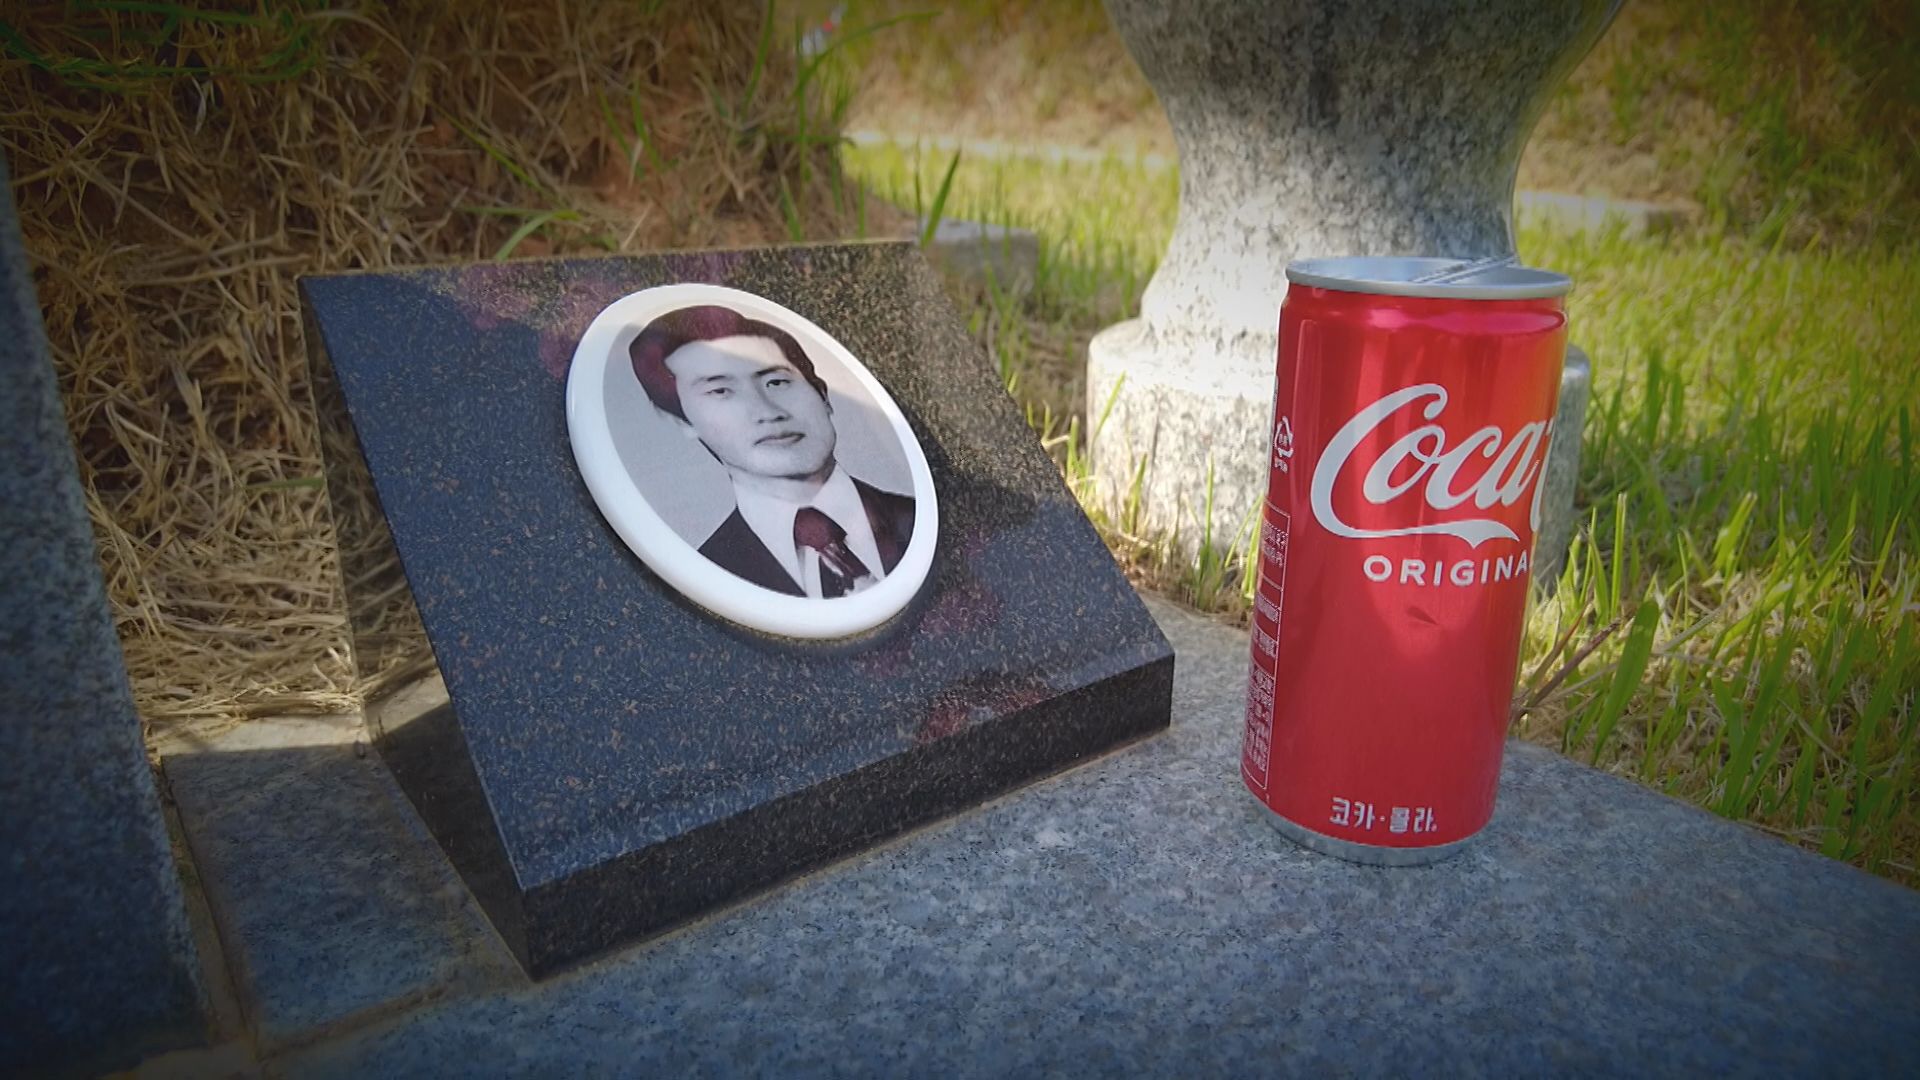 김연우 씨가 아버지 묘비에 올린 콜라.